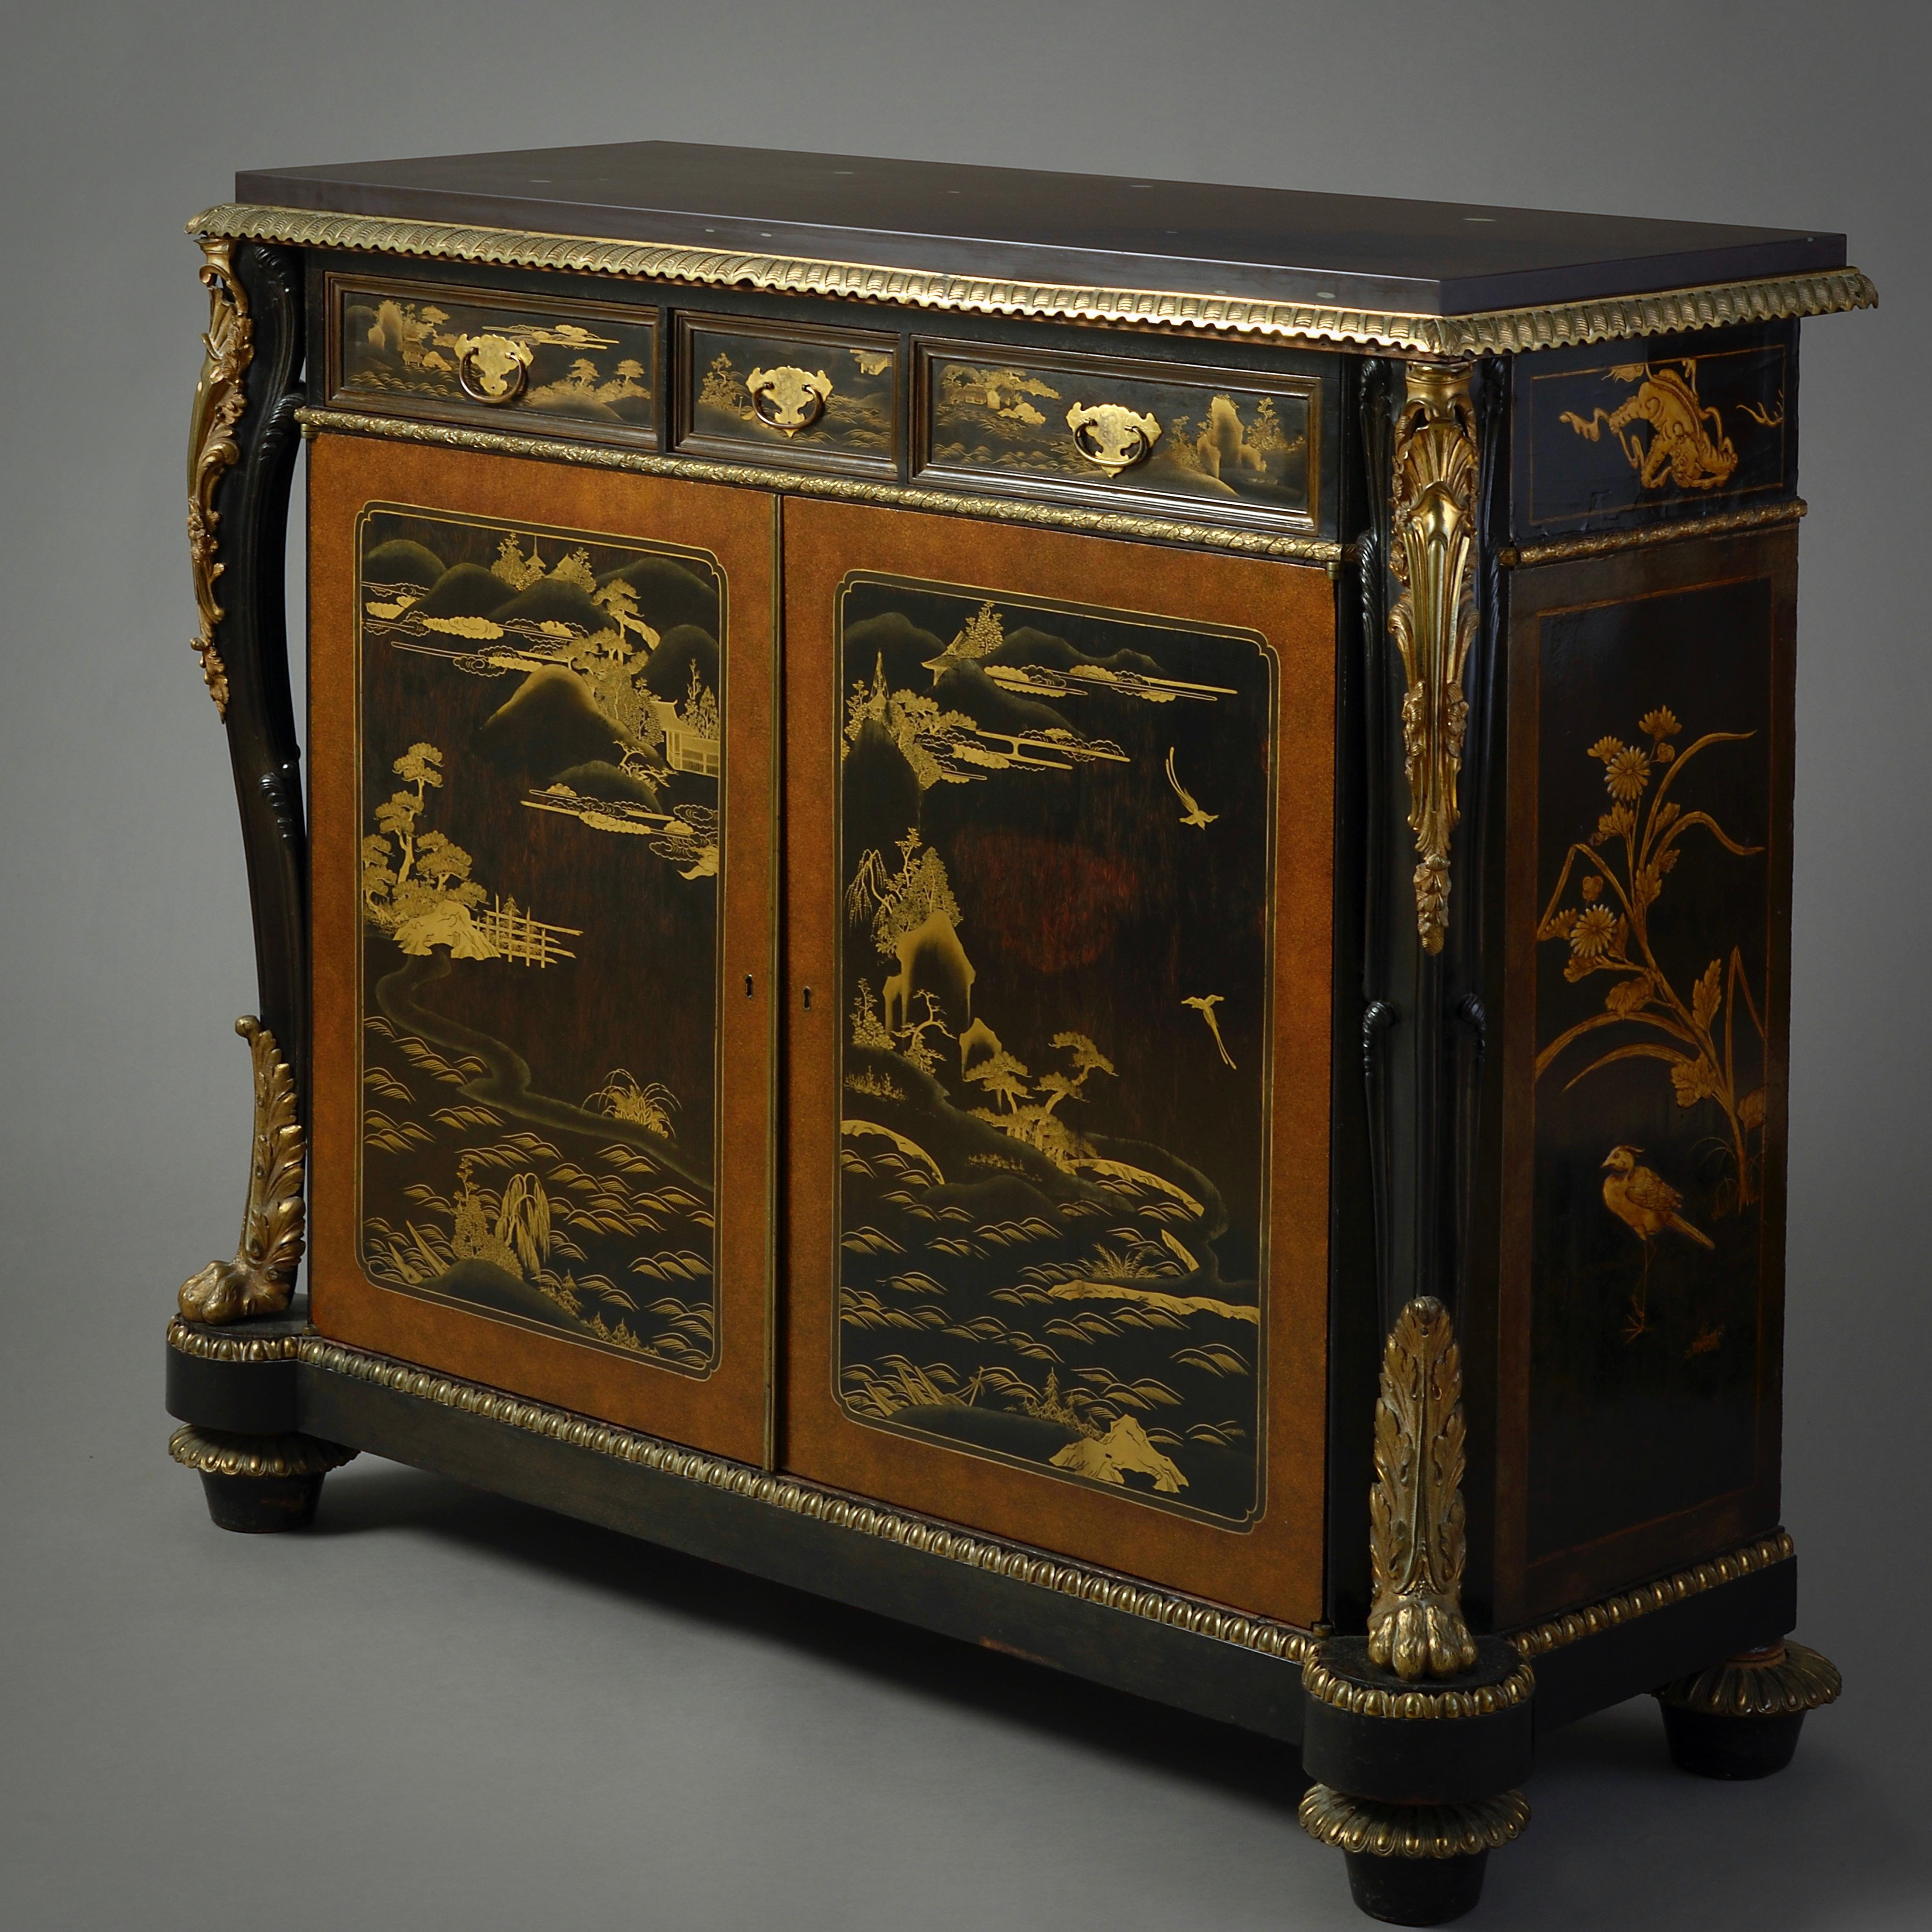 Un cabinet d'appoint de George IV monté en laiton doré, ébénisé, japané et laqué, vers 1830.

Avec un dessus en ardoise violette postérieur. La frise avec trois tiroirs au-dessus de deux portes renfermant des étagères ajustables en acajou, le tout